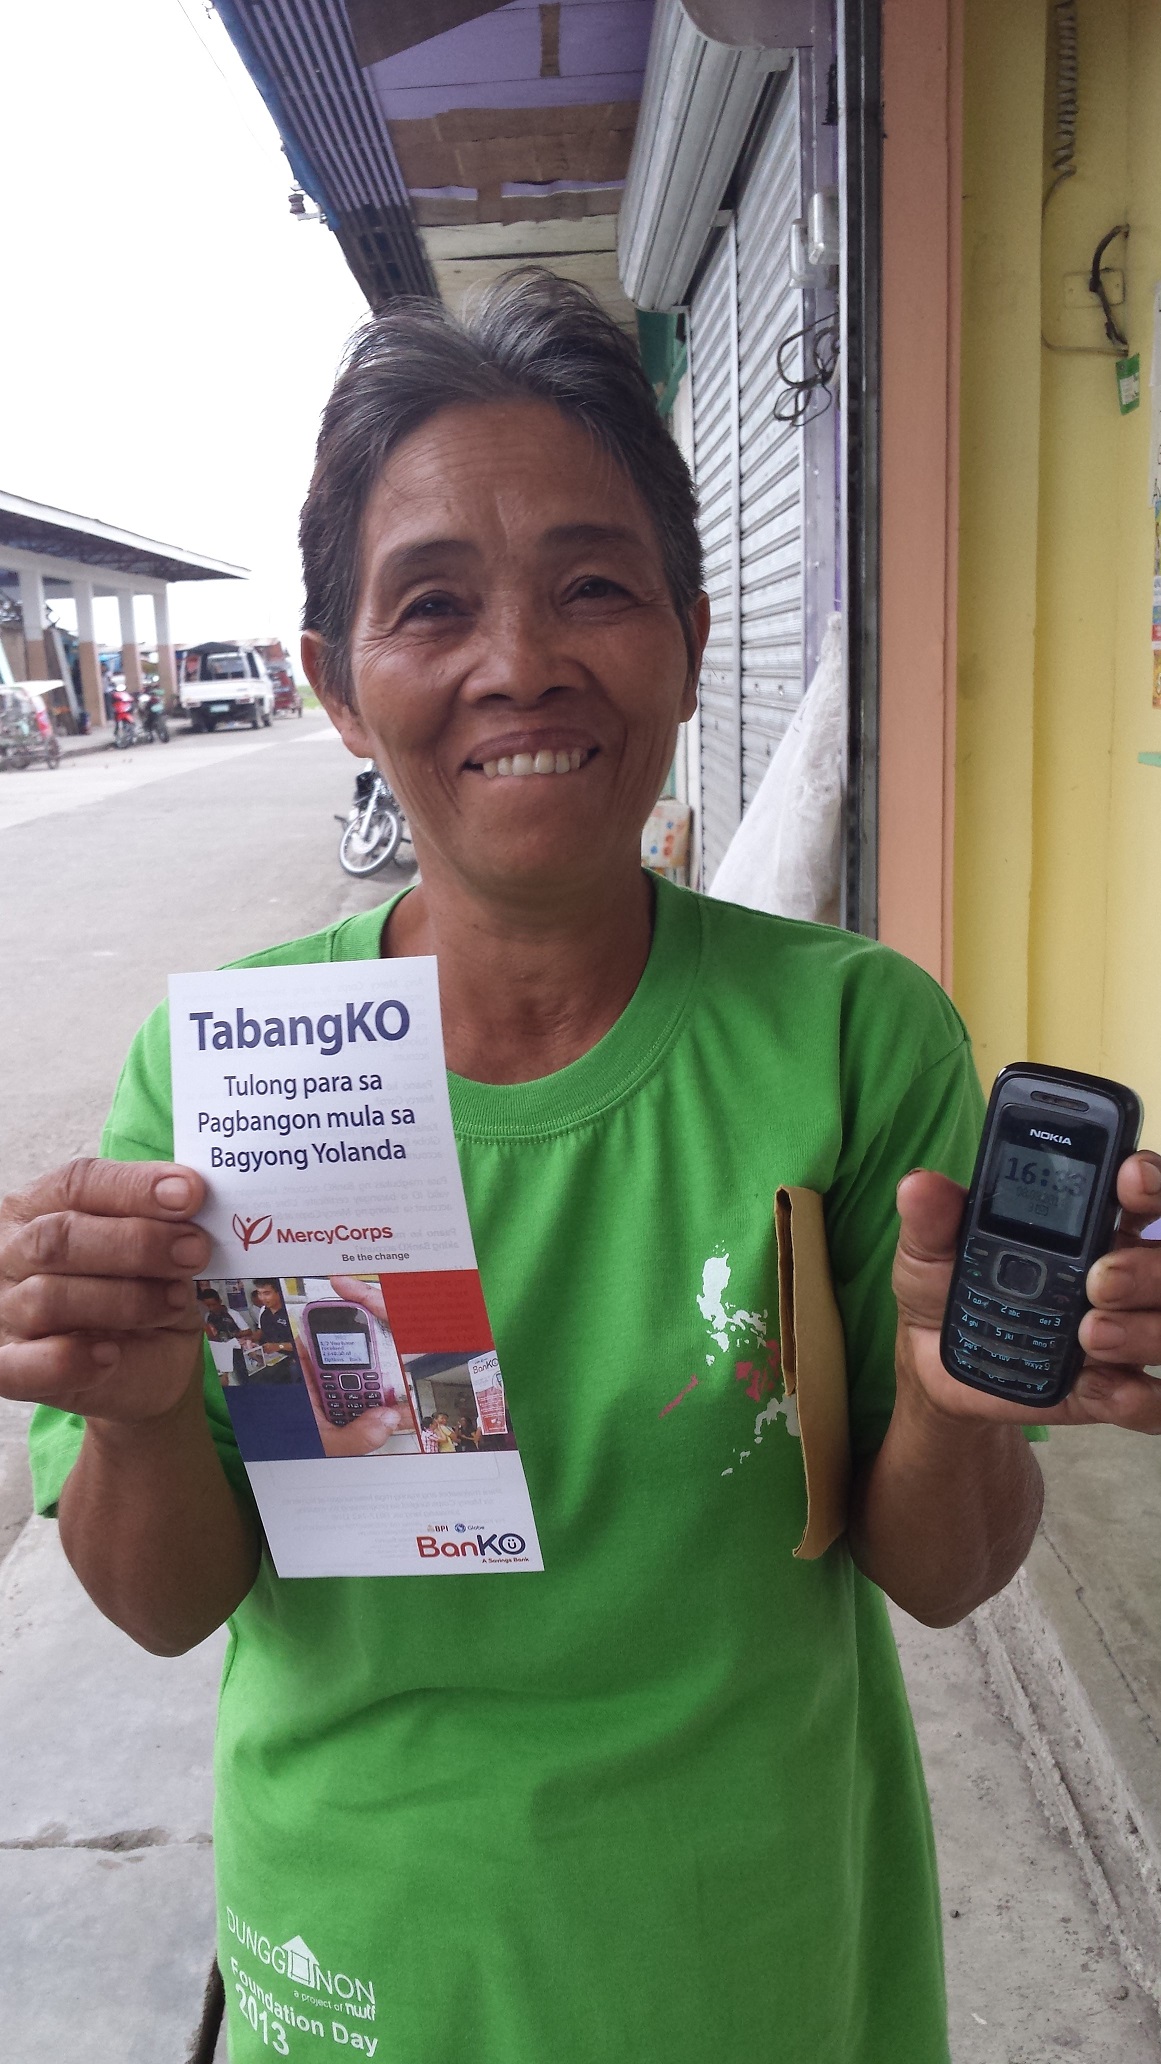 TabanKO Flyer and Phone